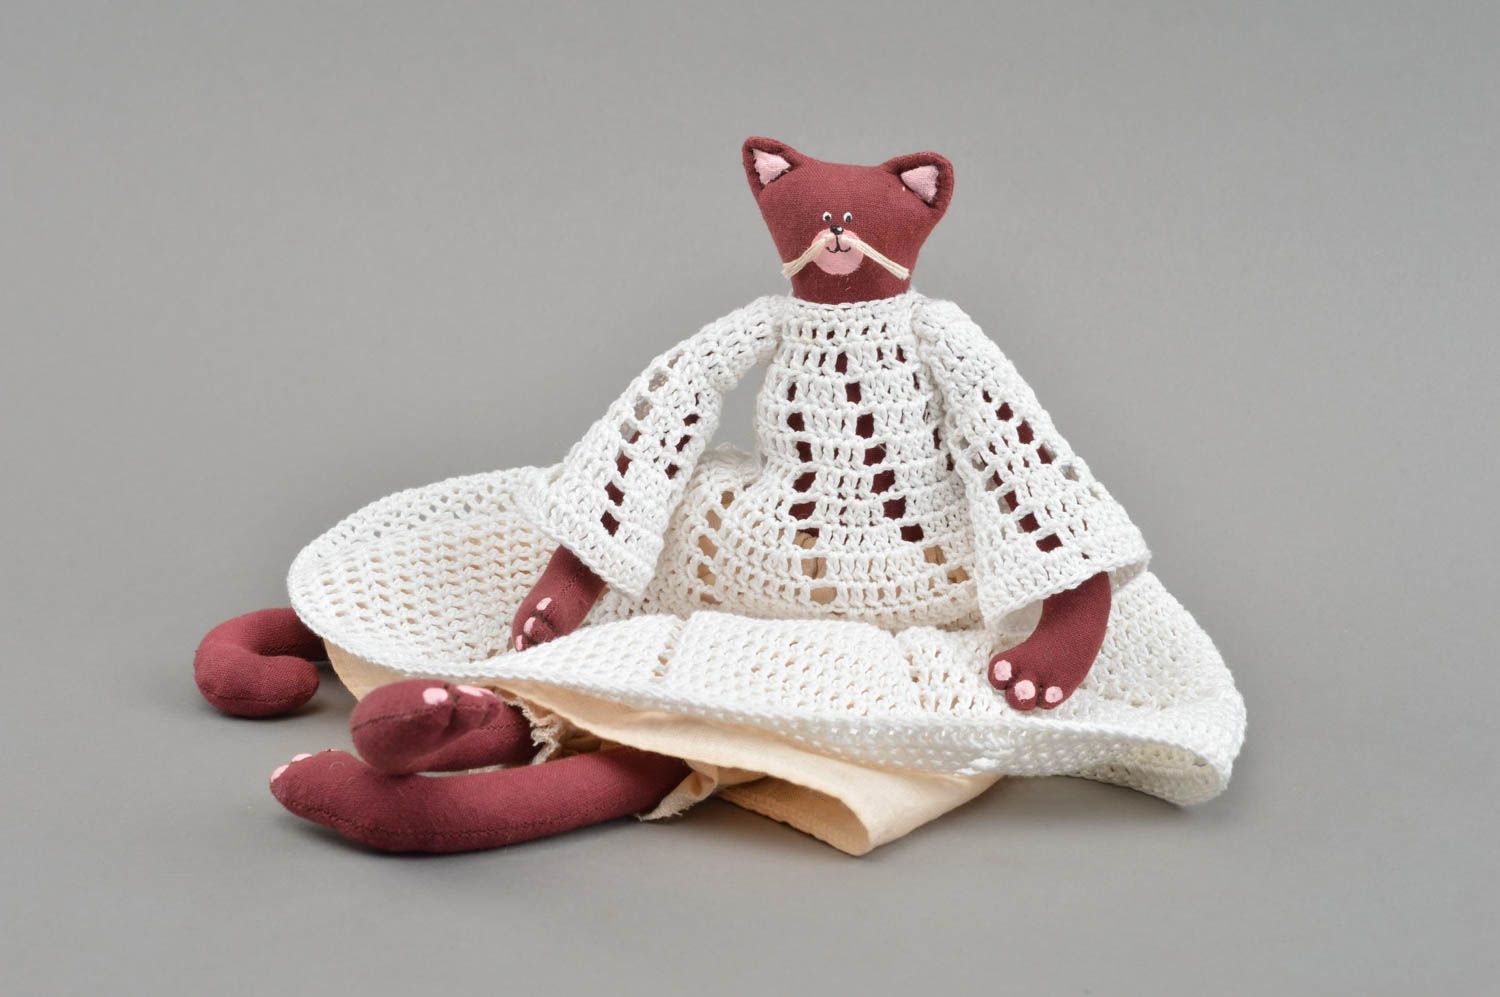 Textil Kuscheltier Katze bordeauxrot im gehäkelten Kleid klein schön handmade foto 3